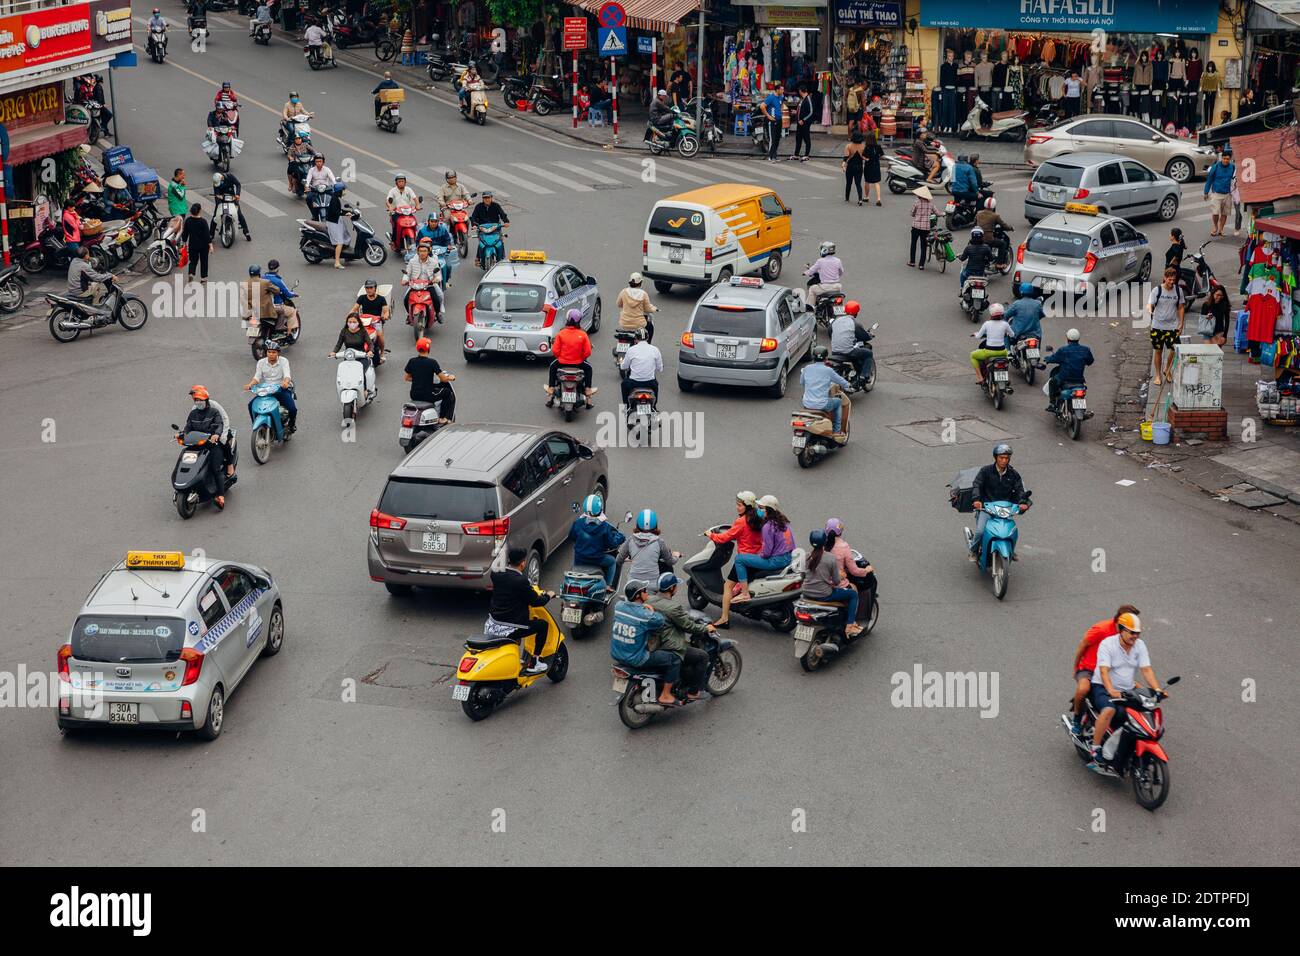 Hanoï, Vietnam - 16 octobre 2018 : vue d'un trafic chaotique célèbre sur la place Dong Kinh Nghia Thuc dans le vieux quartier de Hanoï. Banque D'Images